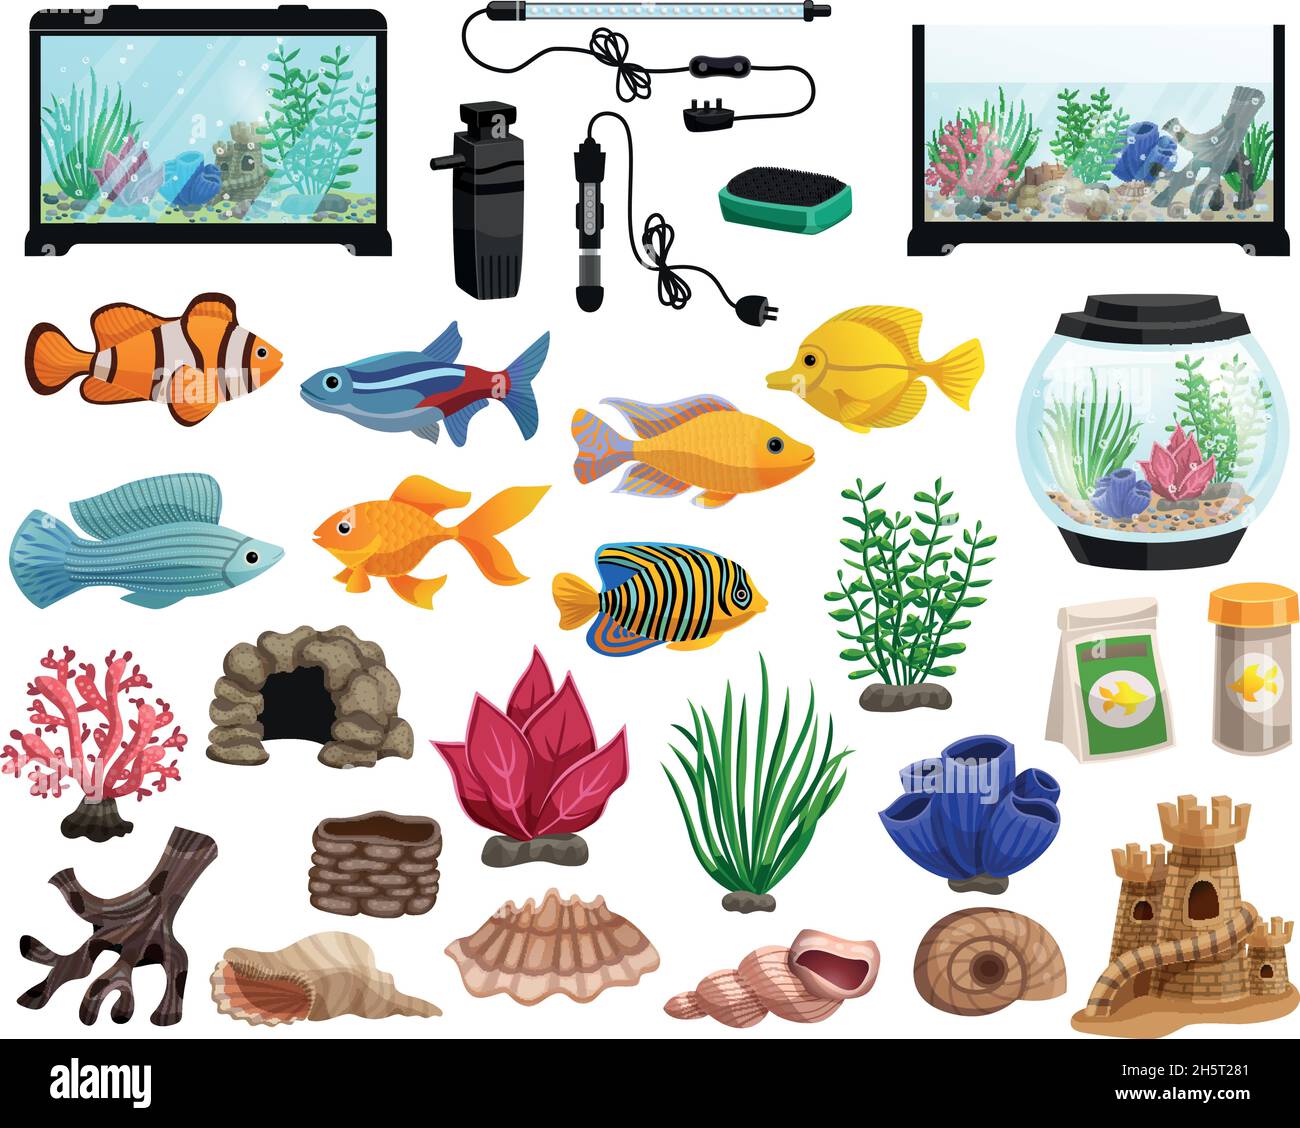 https://c8.alamy.com/comp/2H5T281/aquaristics-cartoon-set-with-aquarium-fishes-corals-stones-seaweeds-seashells-and-aquarium-tanks-of-different-shapes-vector-illustration-2H5T281.jpg